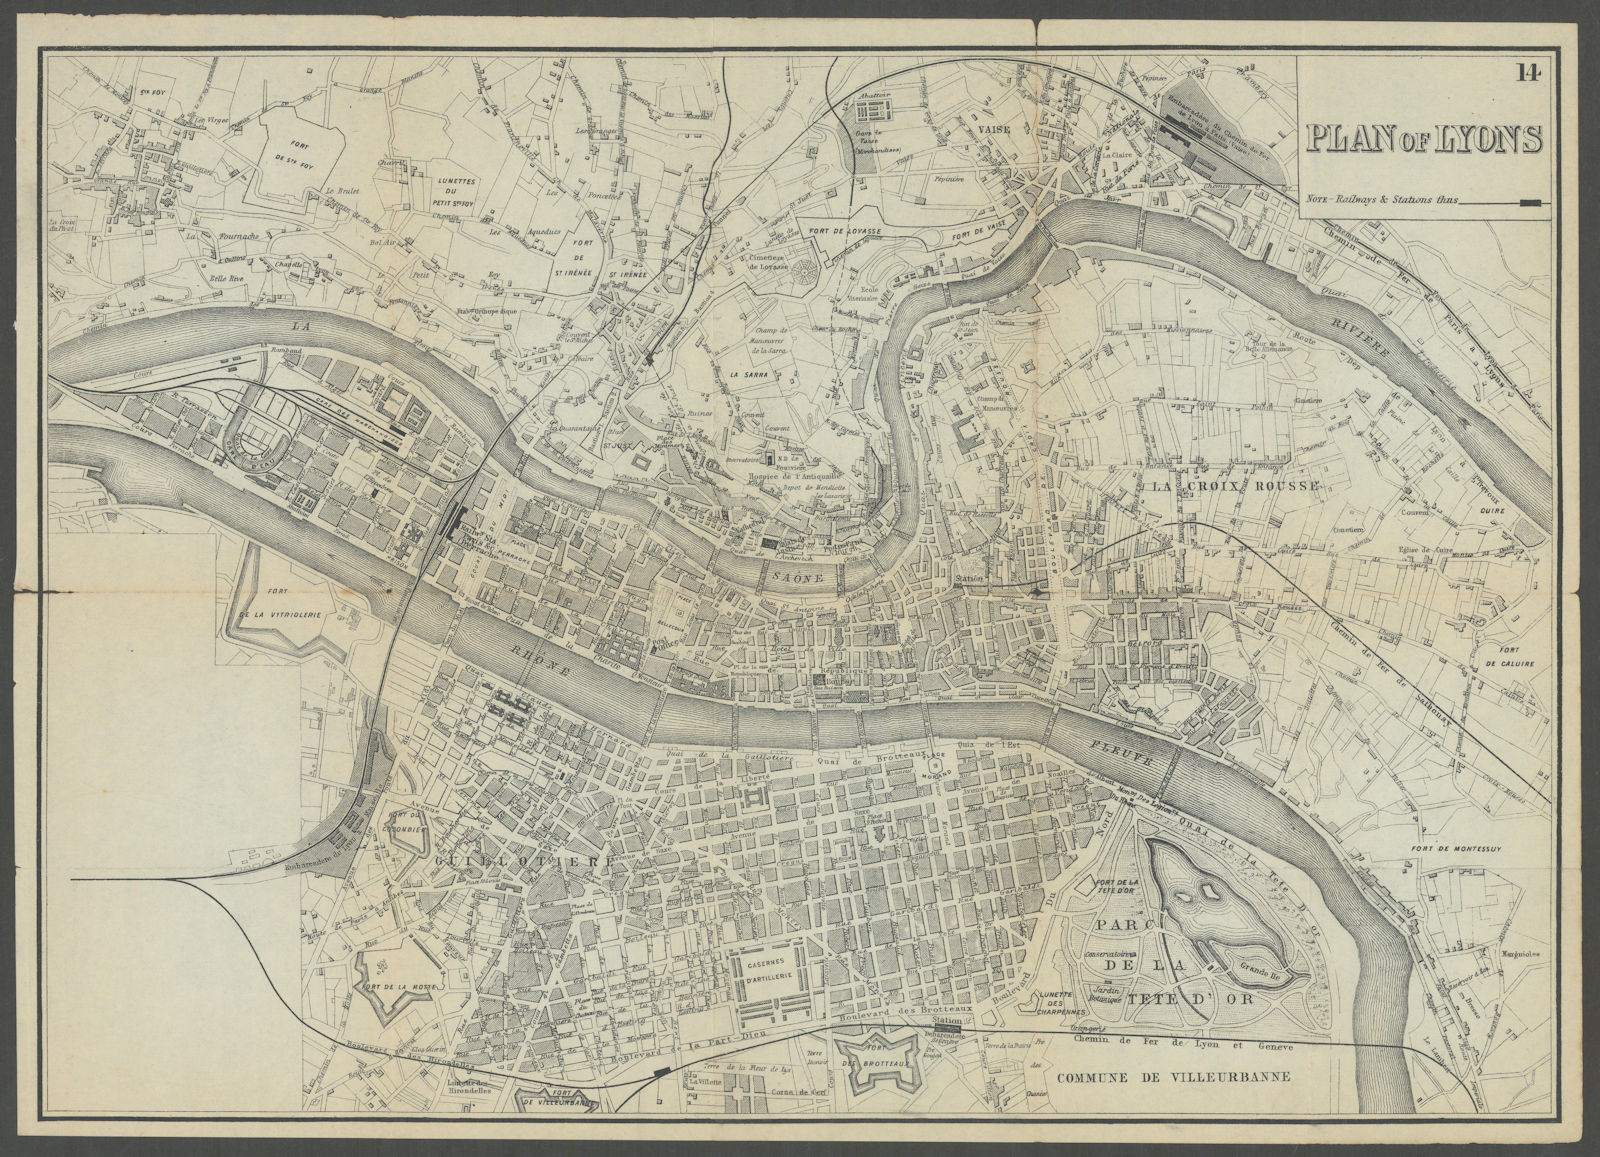 LYONS LYON antique town plan city map. France. BRADSHAW c1899 old